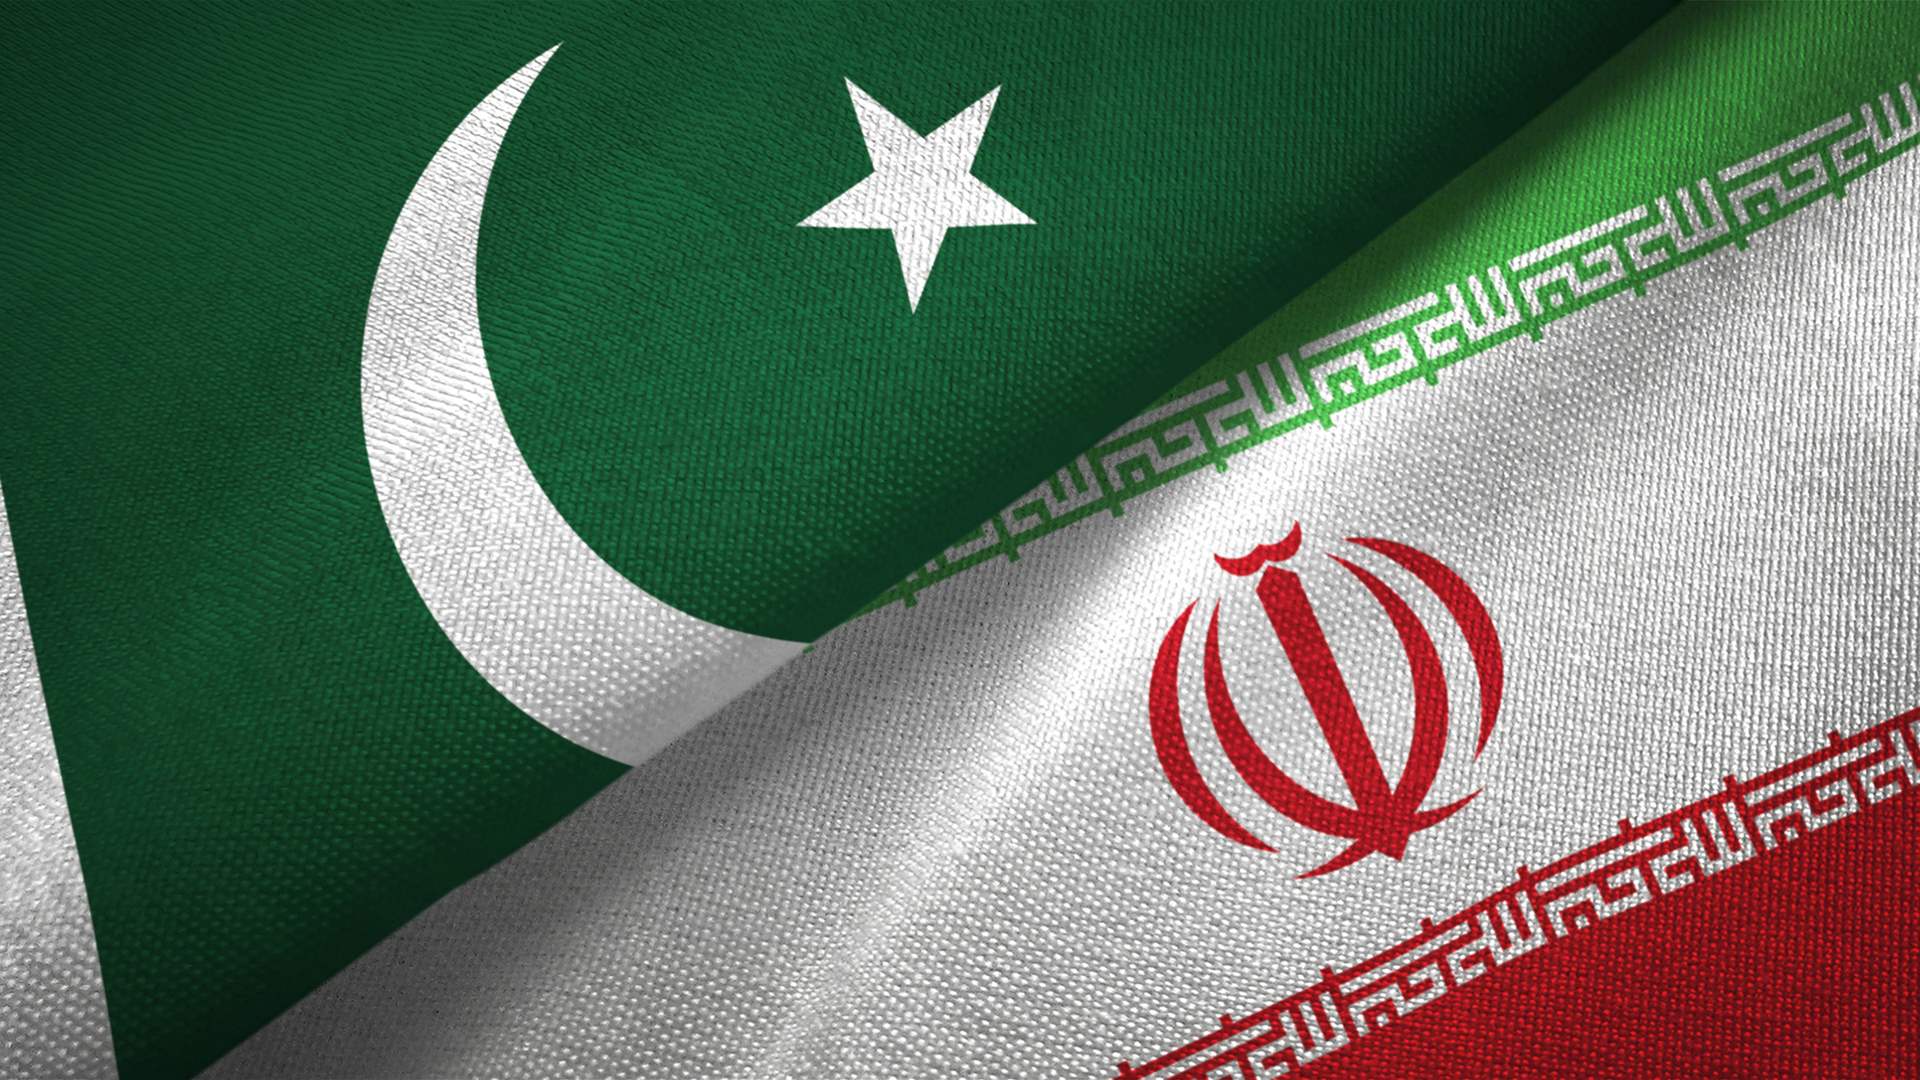 إيران وباكستان في بيان مشترك: ندعو مجلس الأمن لوقف مغامرات إسرائيل في المنطقة